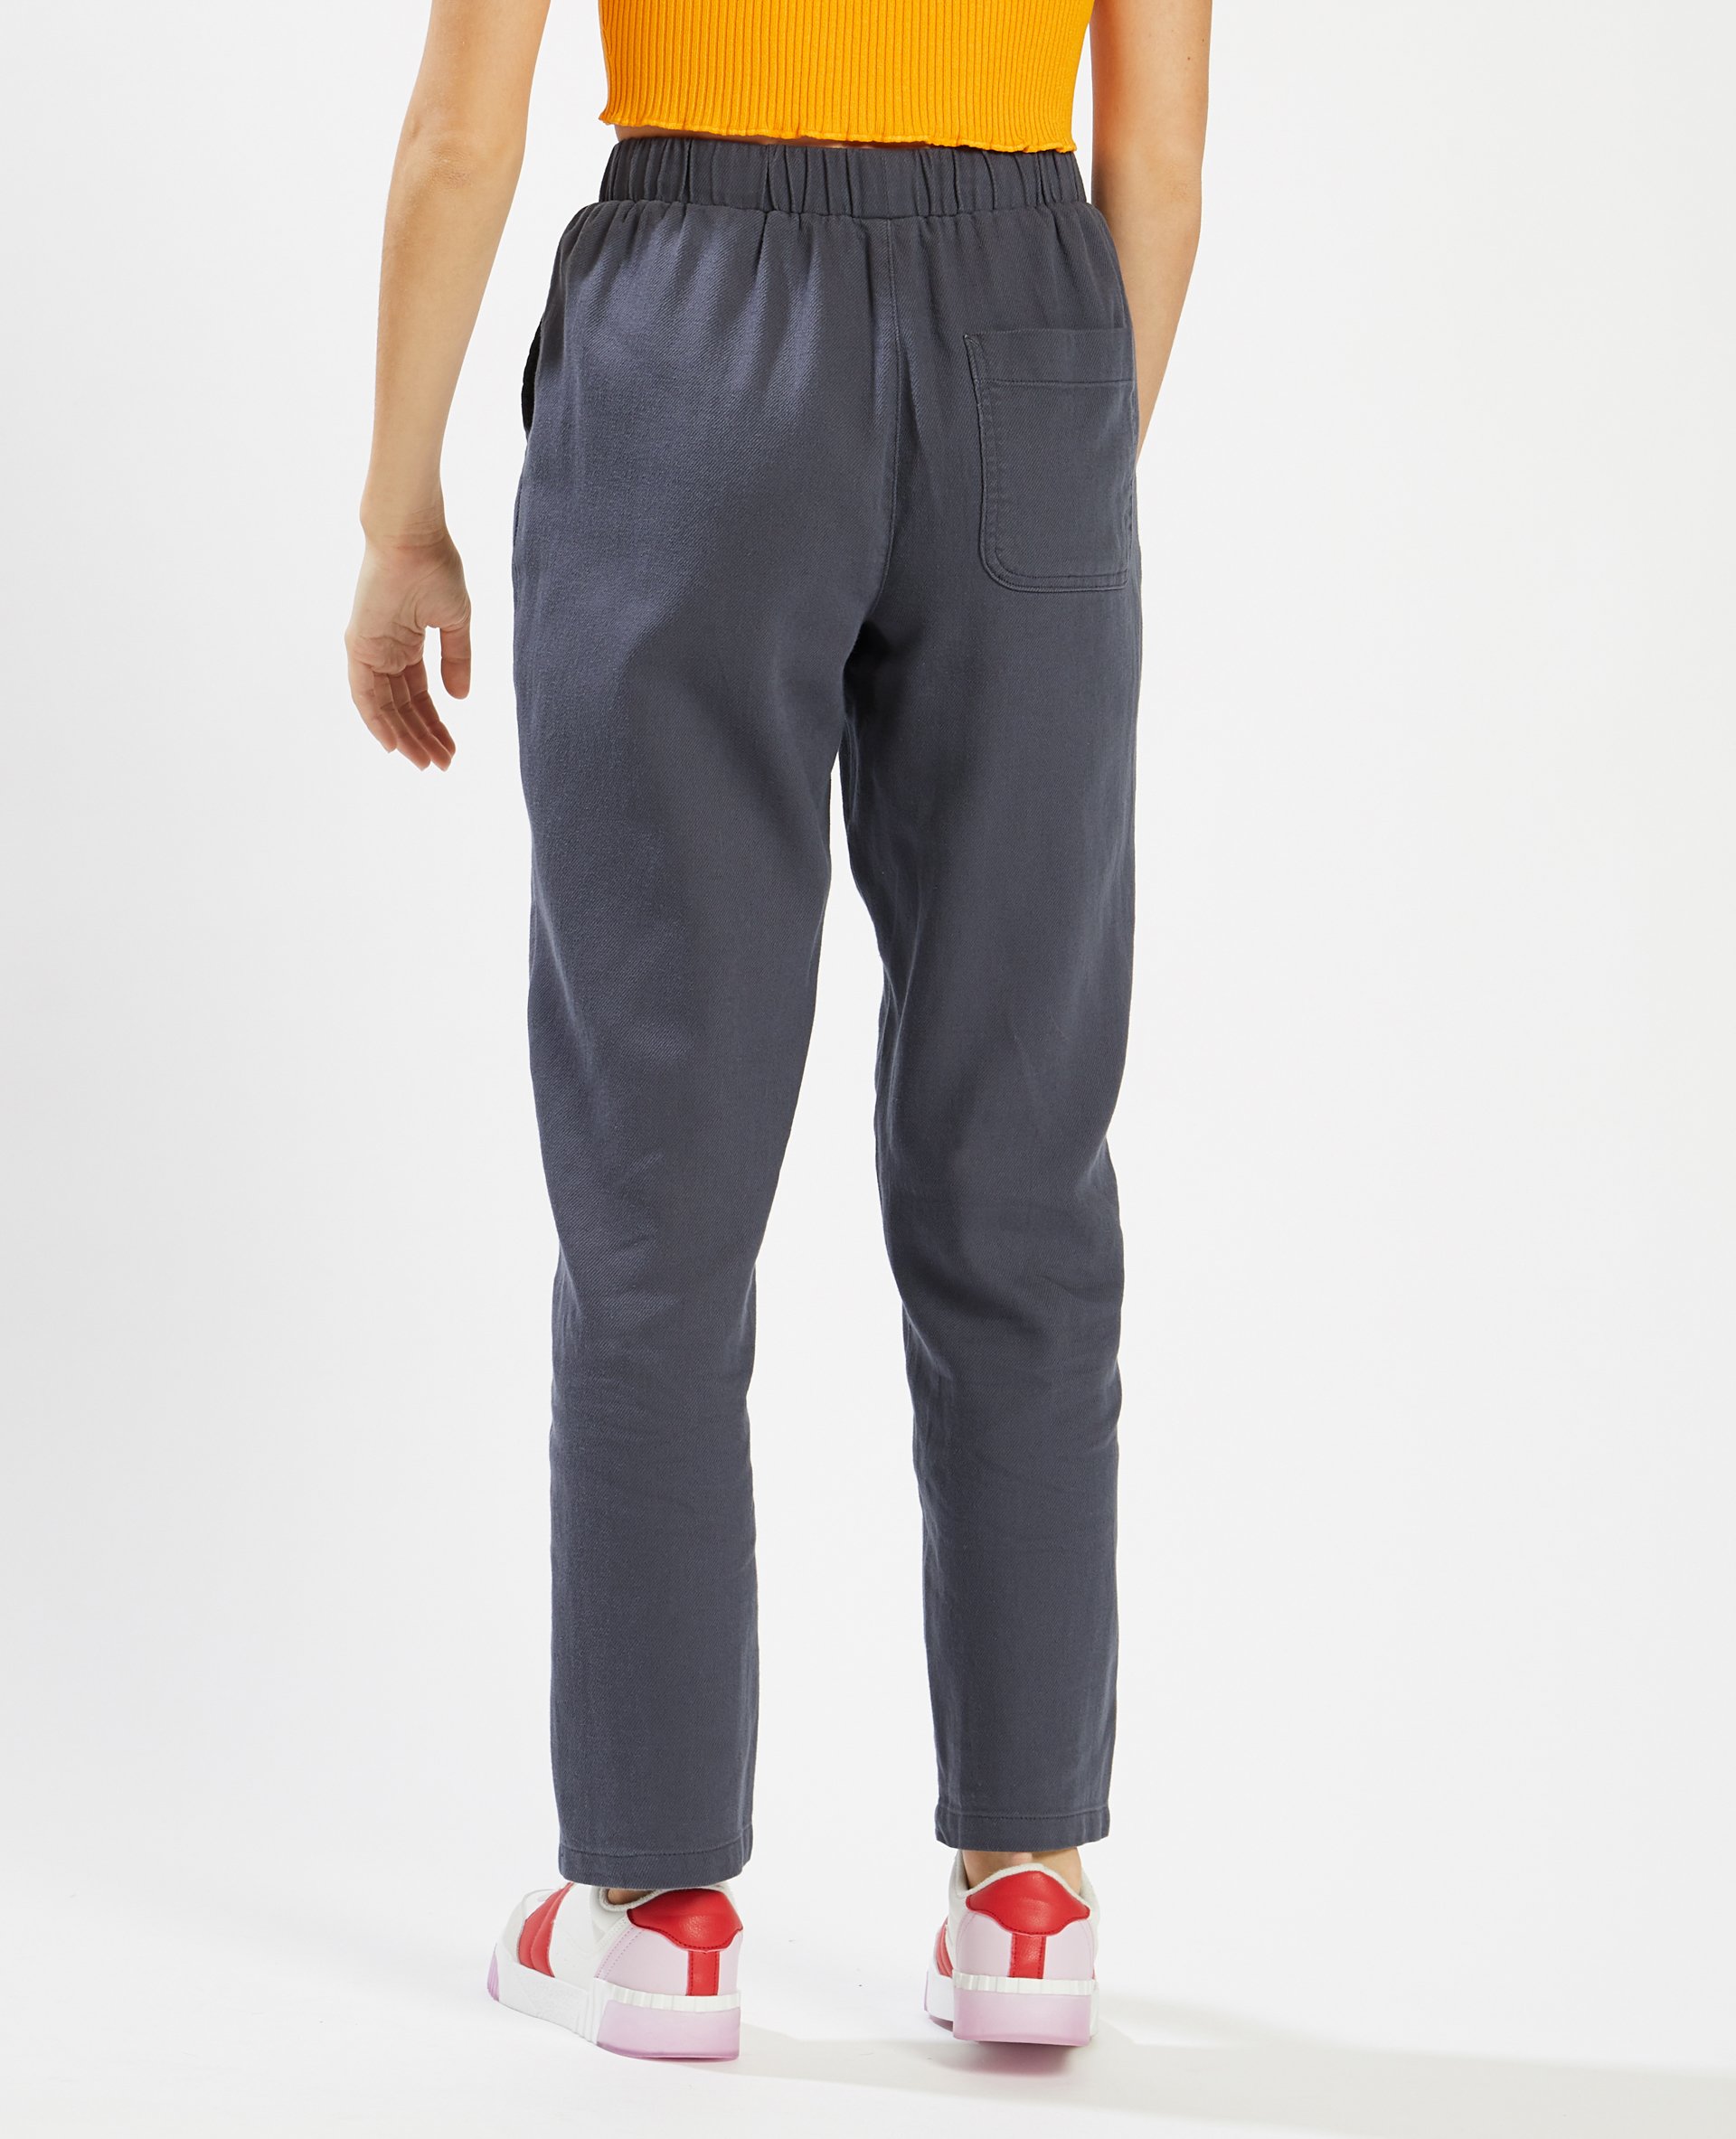 Pantalon taille élastiquée gris - Pimkie